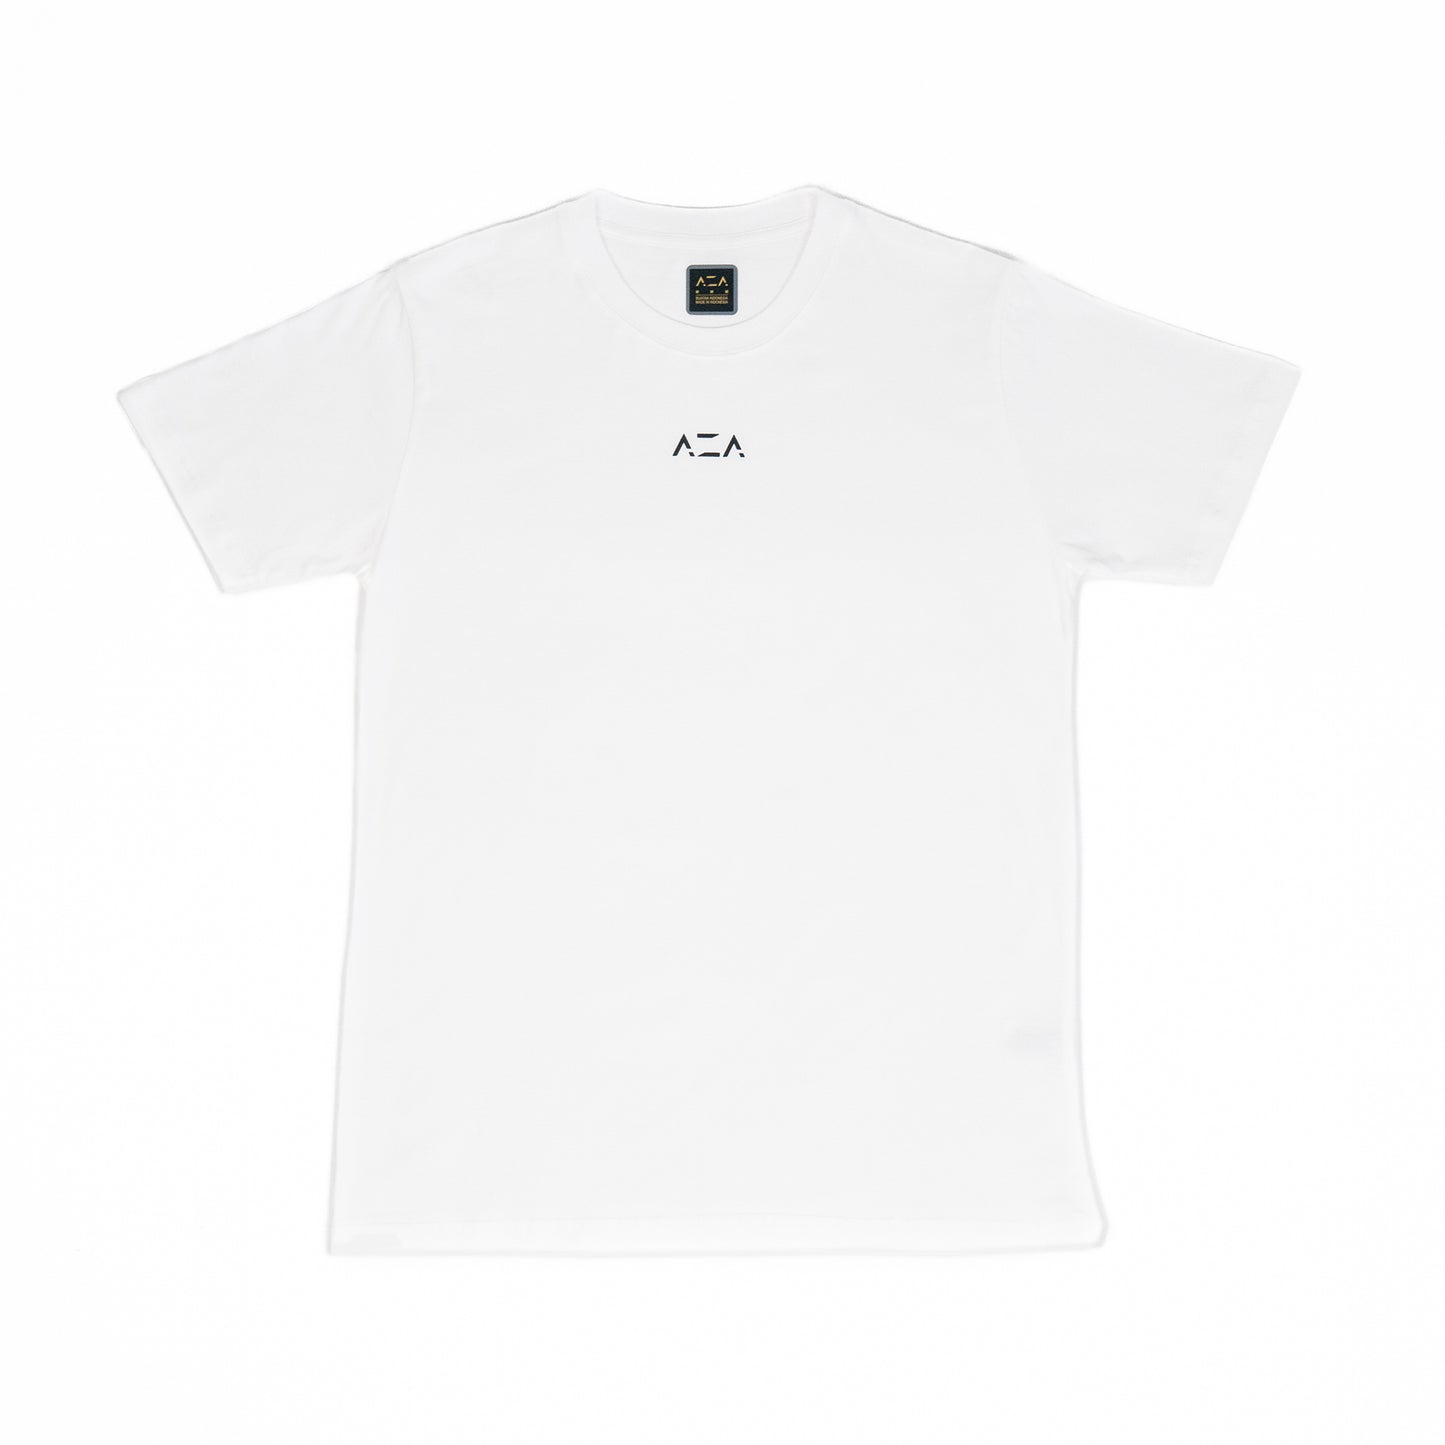 AZA T-Shirt Pro Basic Edition - White